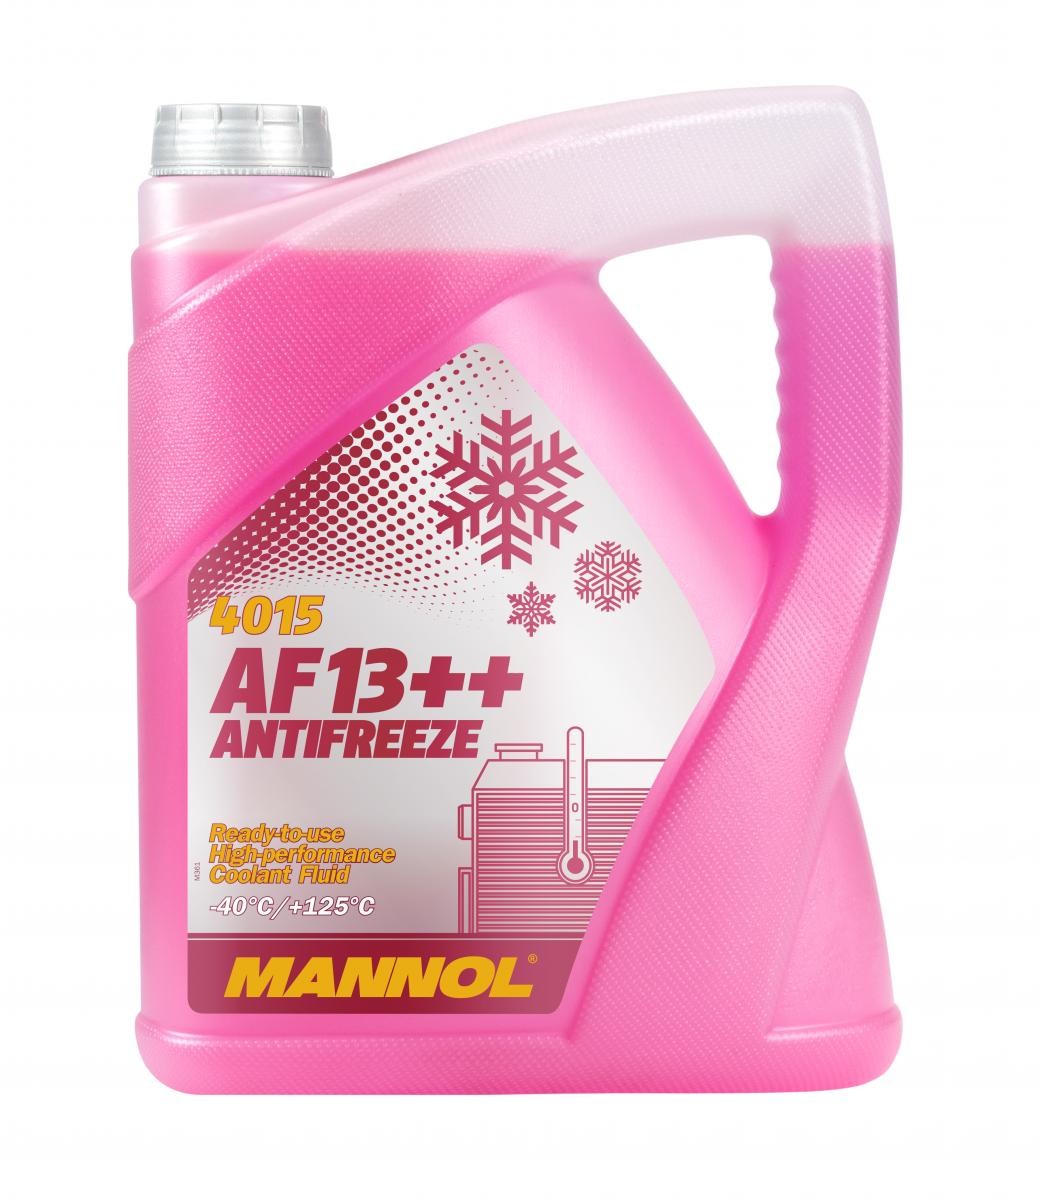 Kupite MANNOL Sredstvo proti zmrzovanju hladilne vode (antifriz) MN4015-5 za VOLVO po zmerni ceni